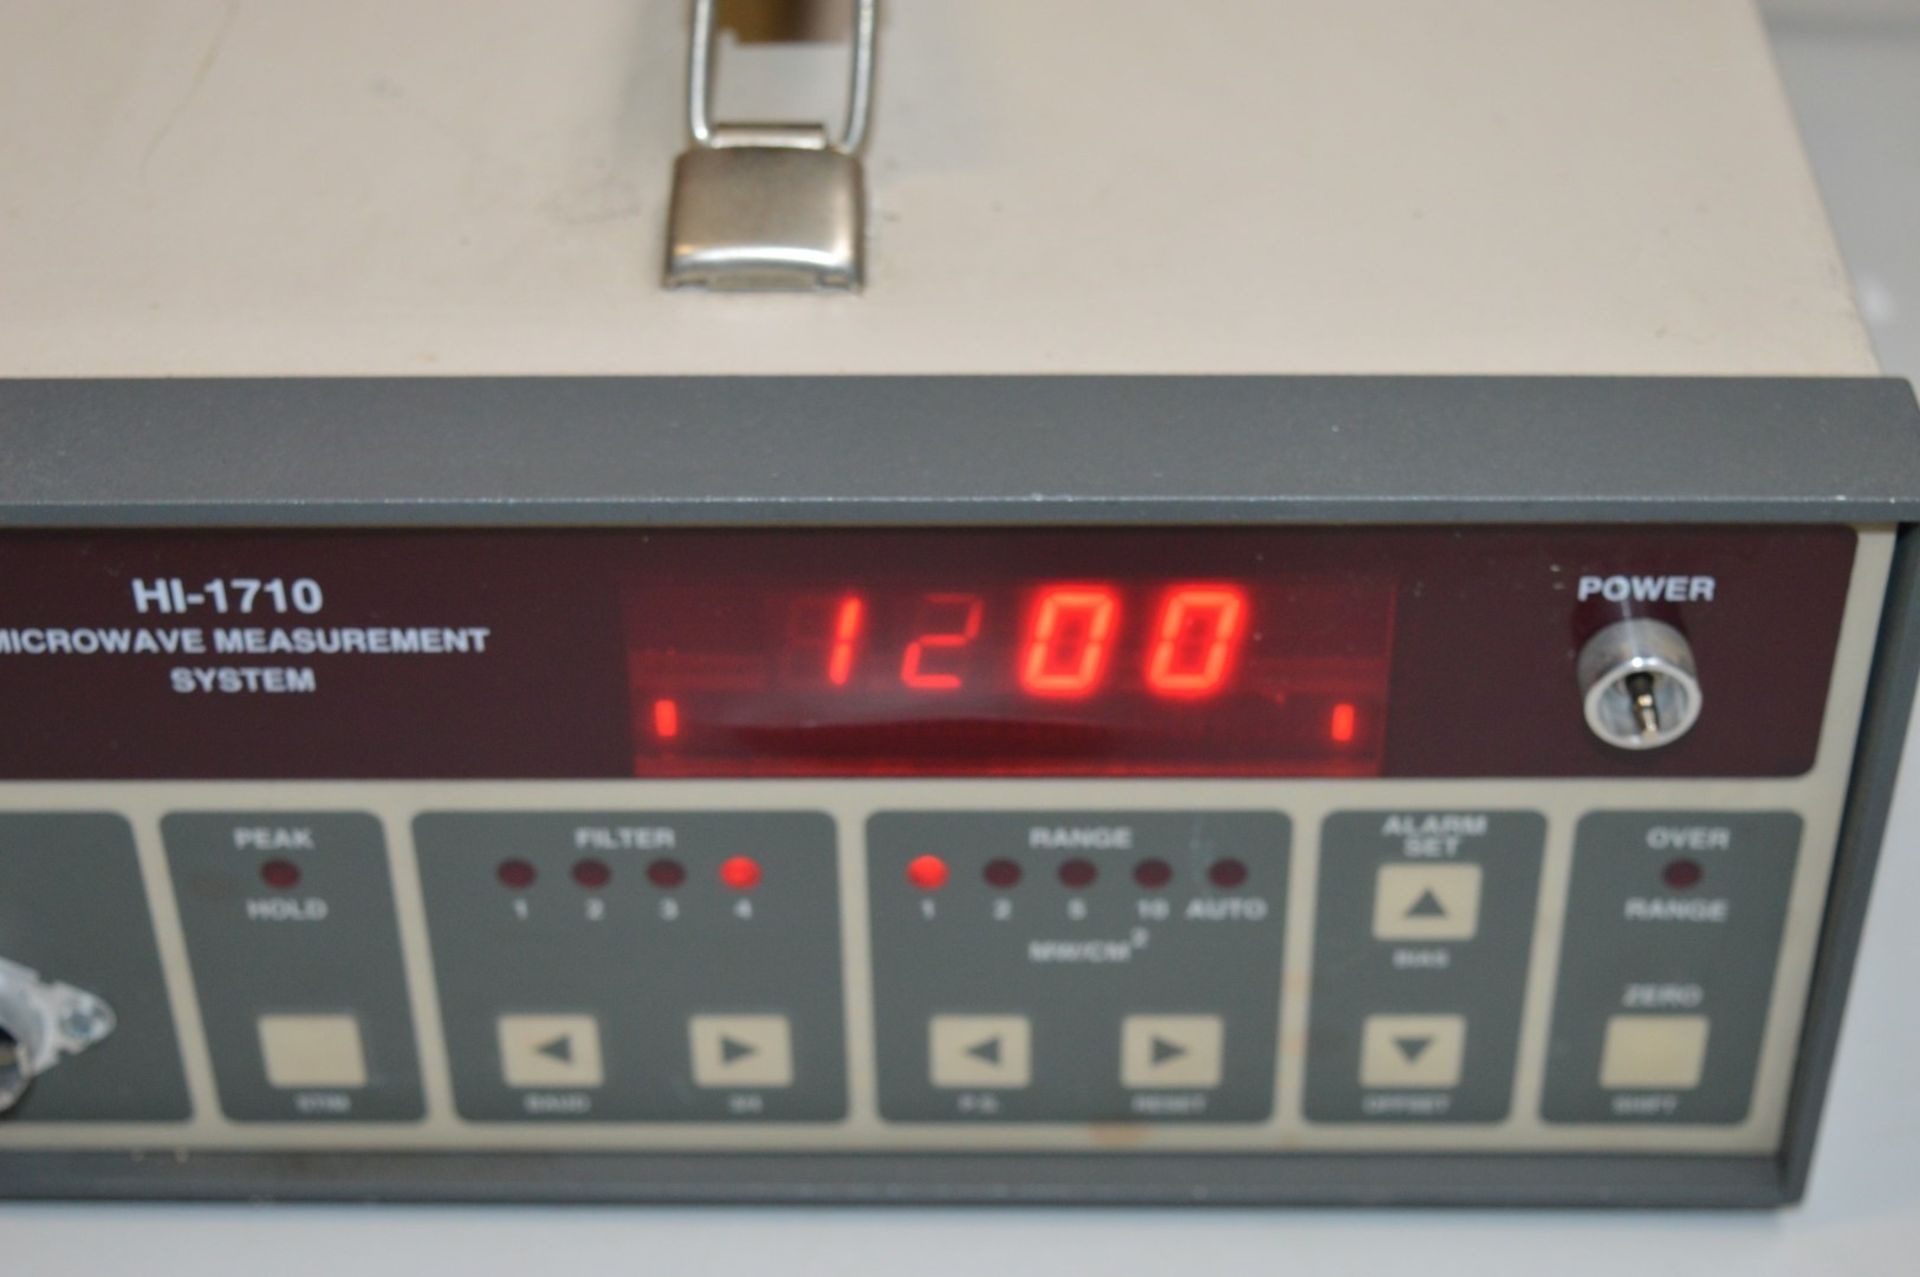 1 HOLDAY Microwave Measurement System - Model HI-1710 - Vintage Test Equipment - CL011 - Ref - Image 5 of 6